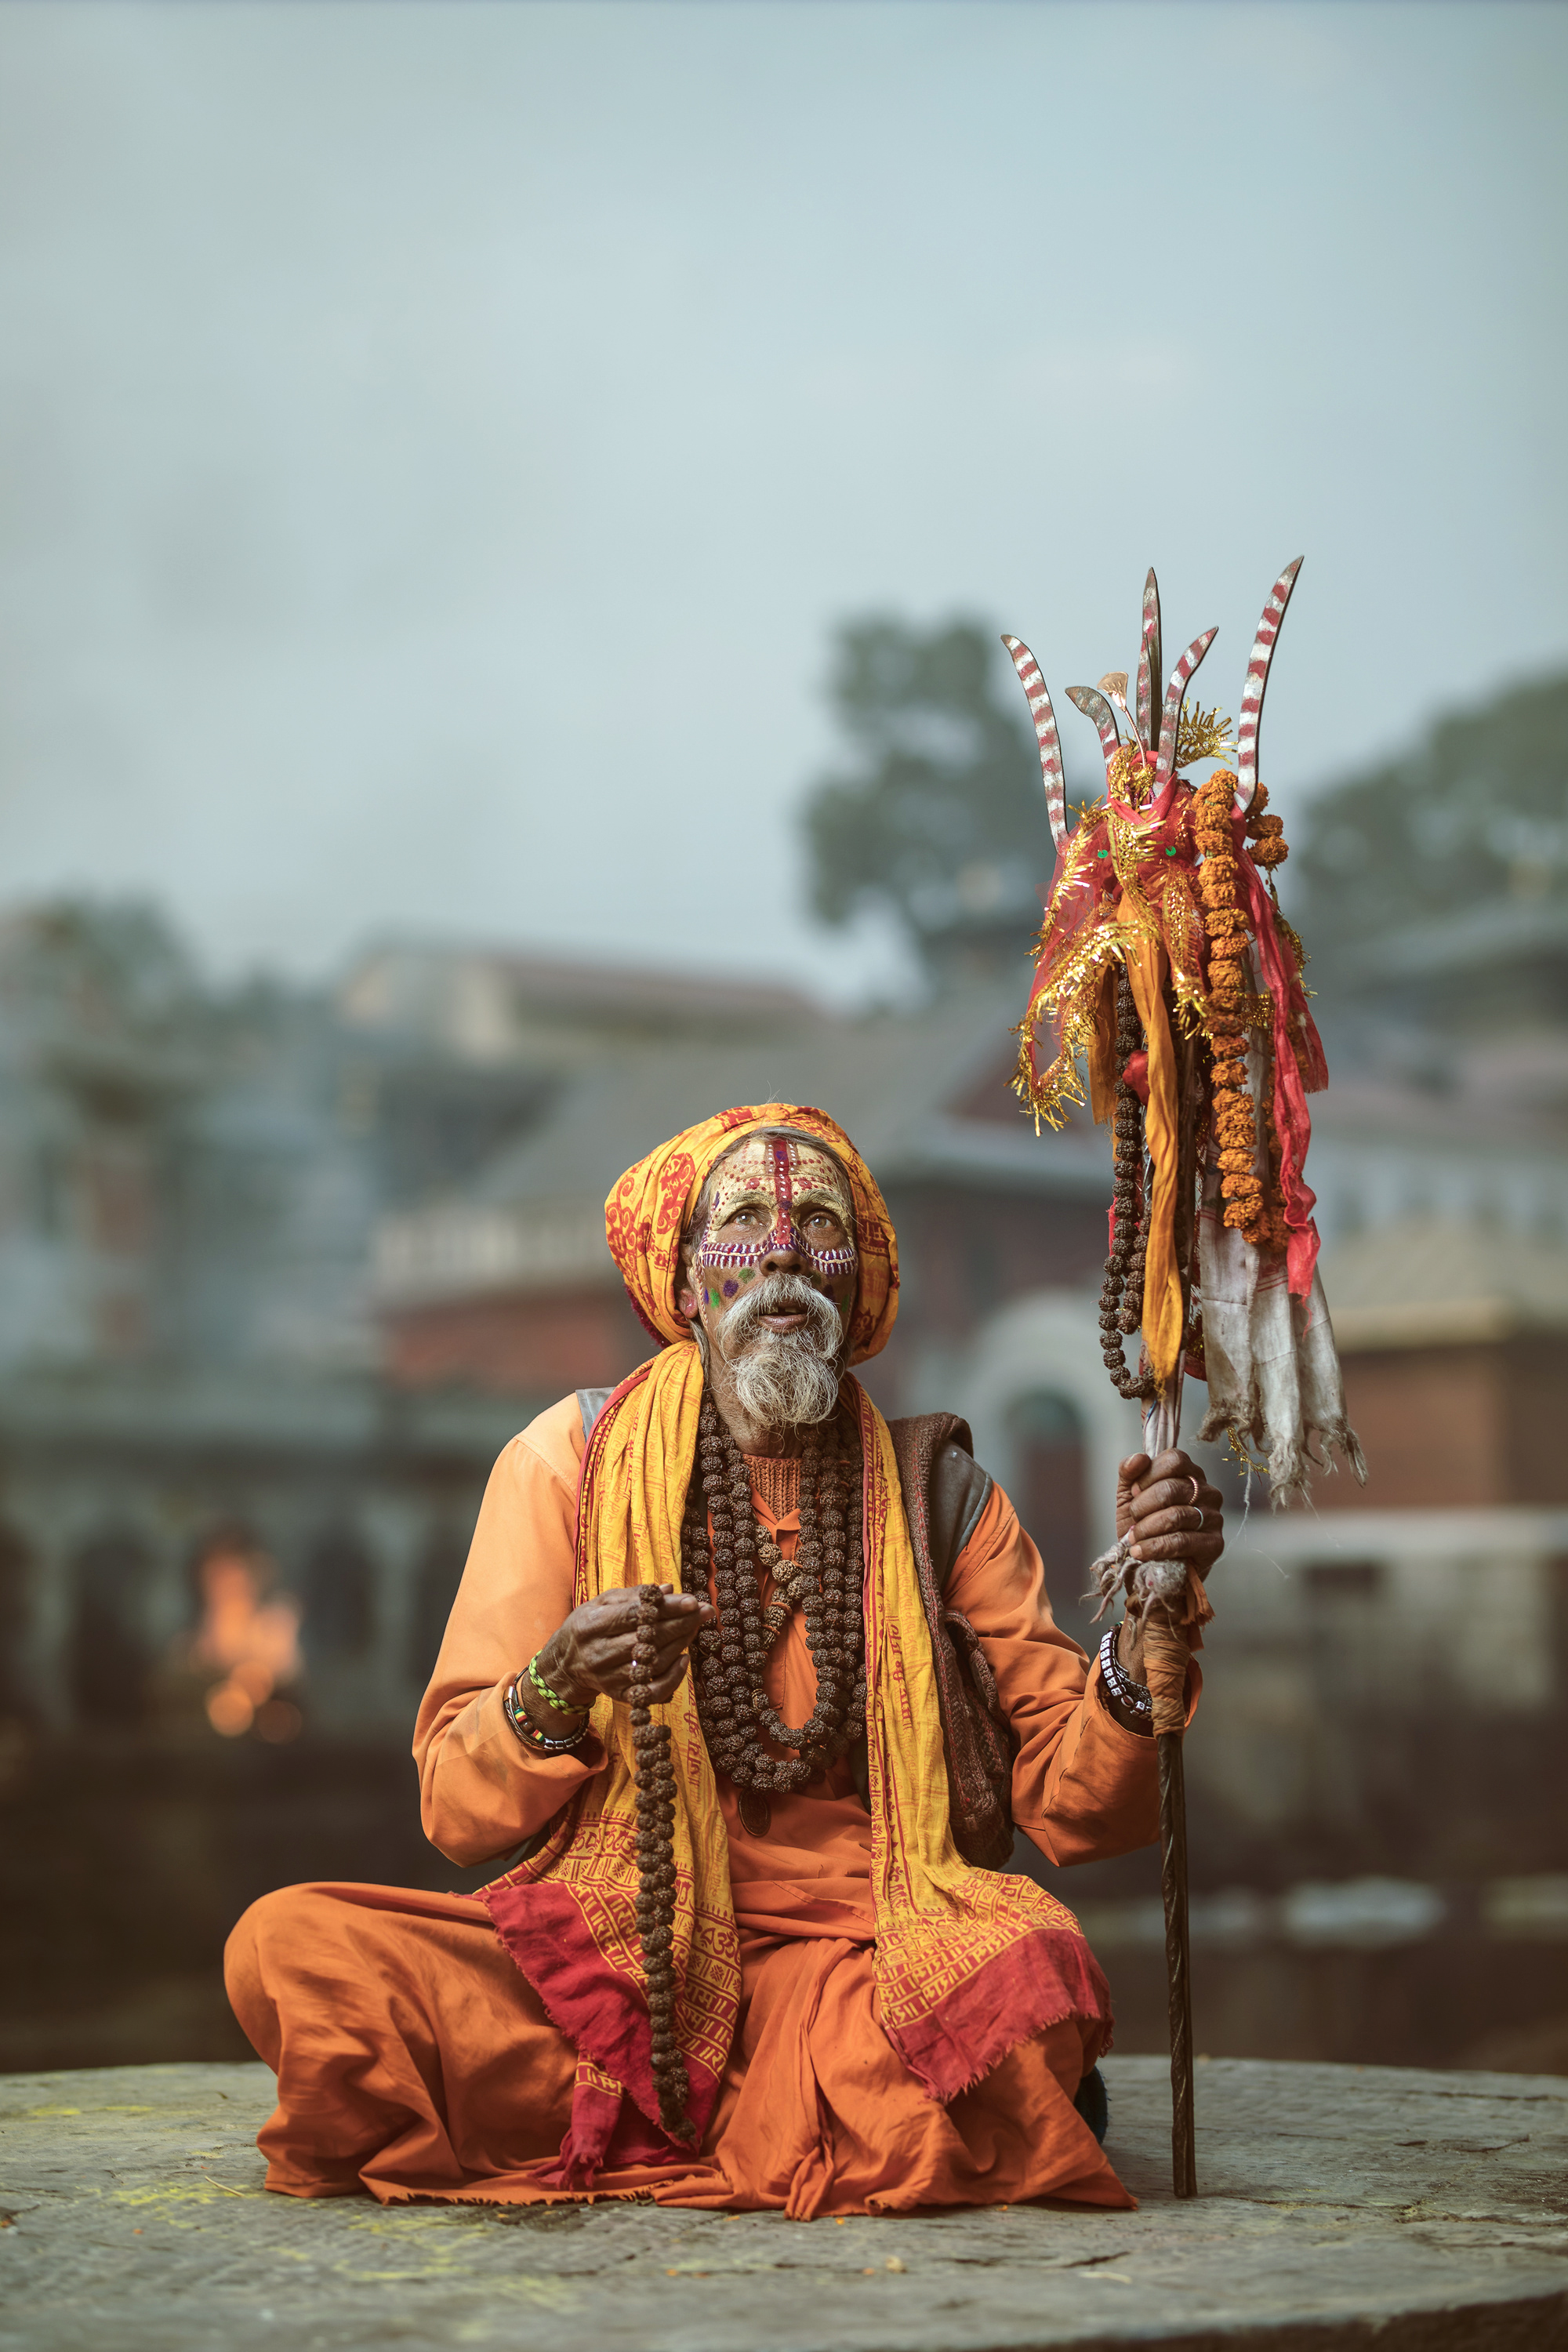 苦行僧(sadhu)是印度盛行的修练方式,常有苦行僧蓬头垢面,衣衫褴褛,带